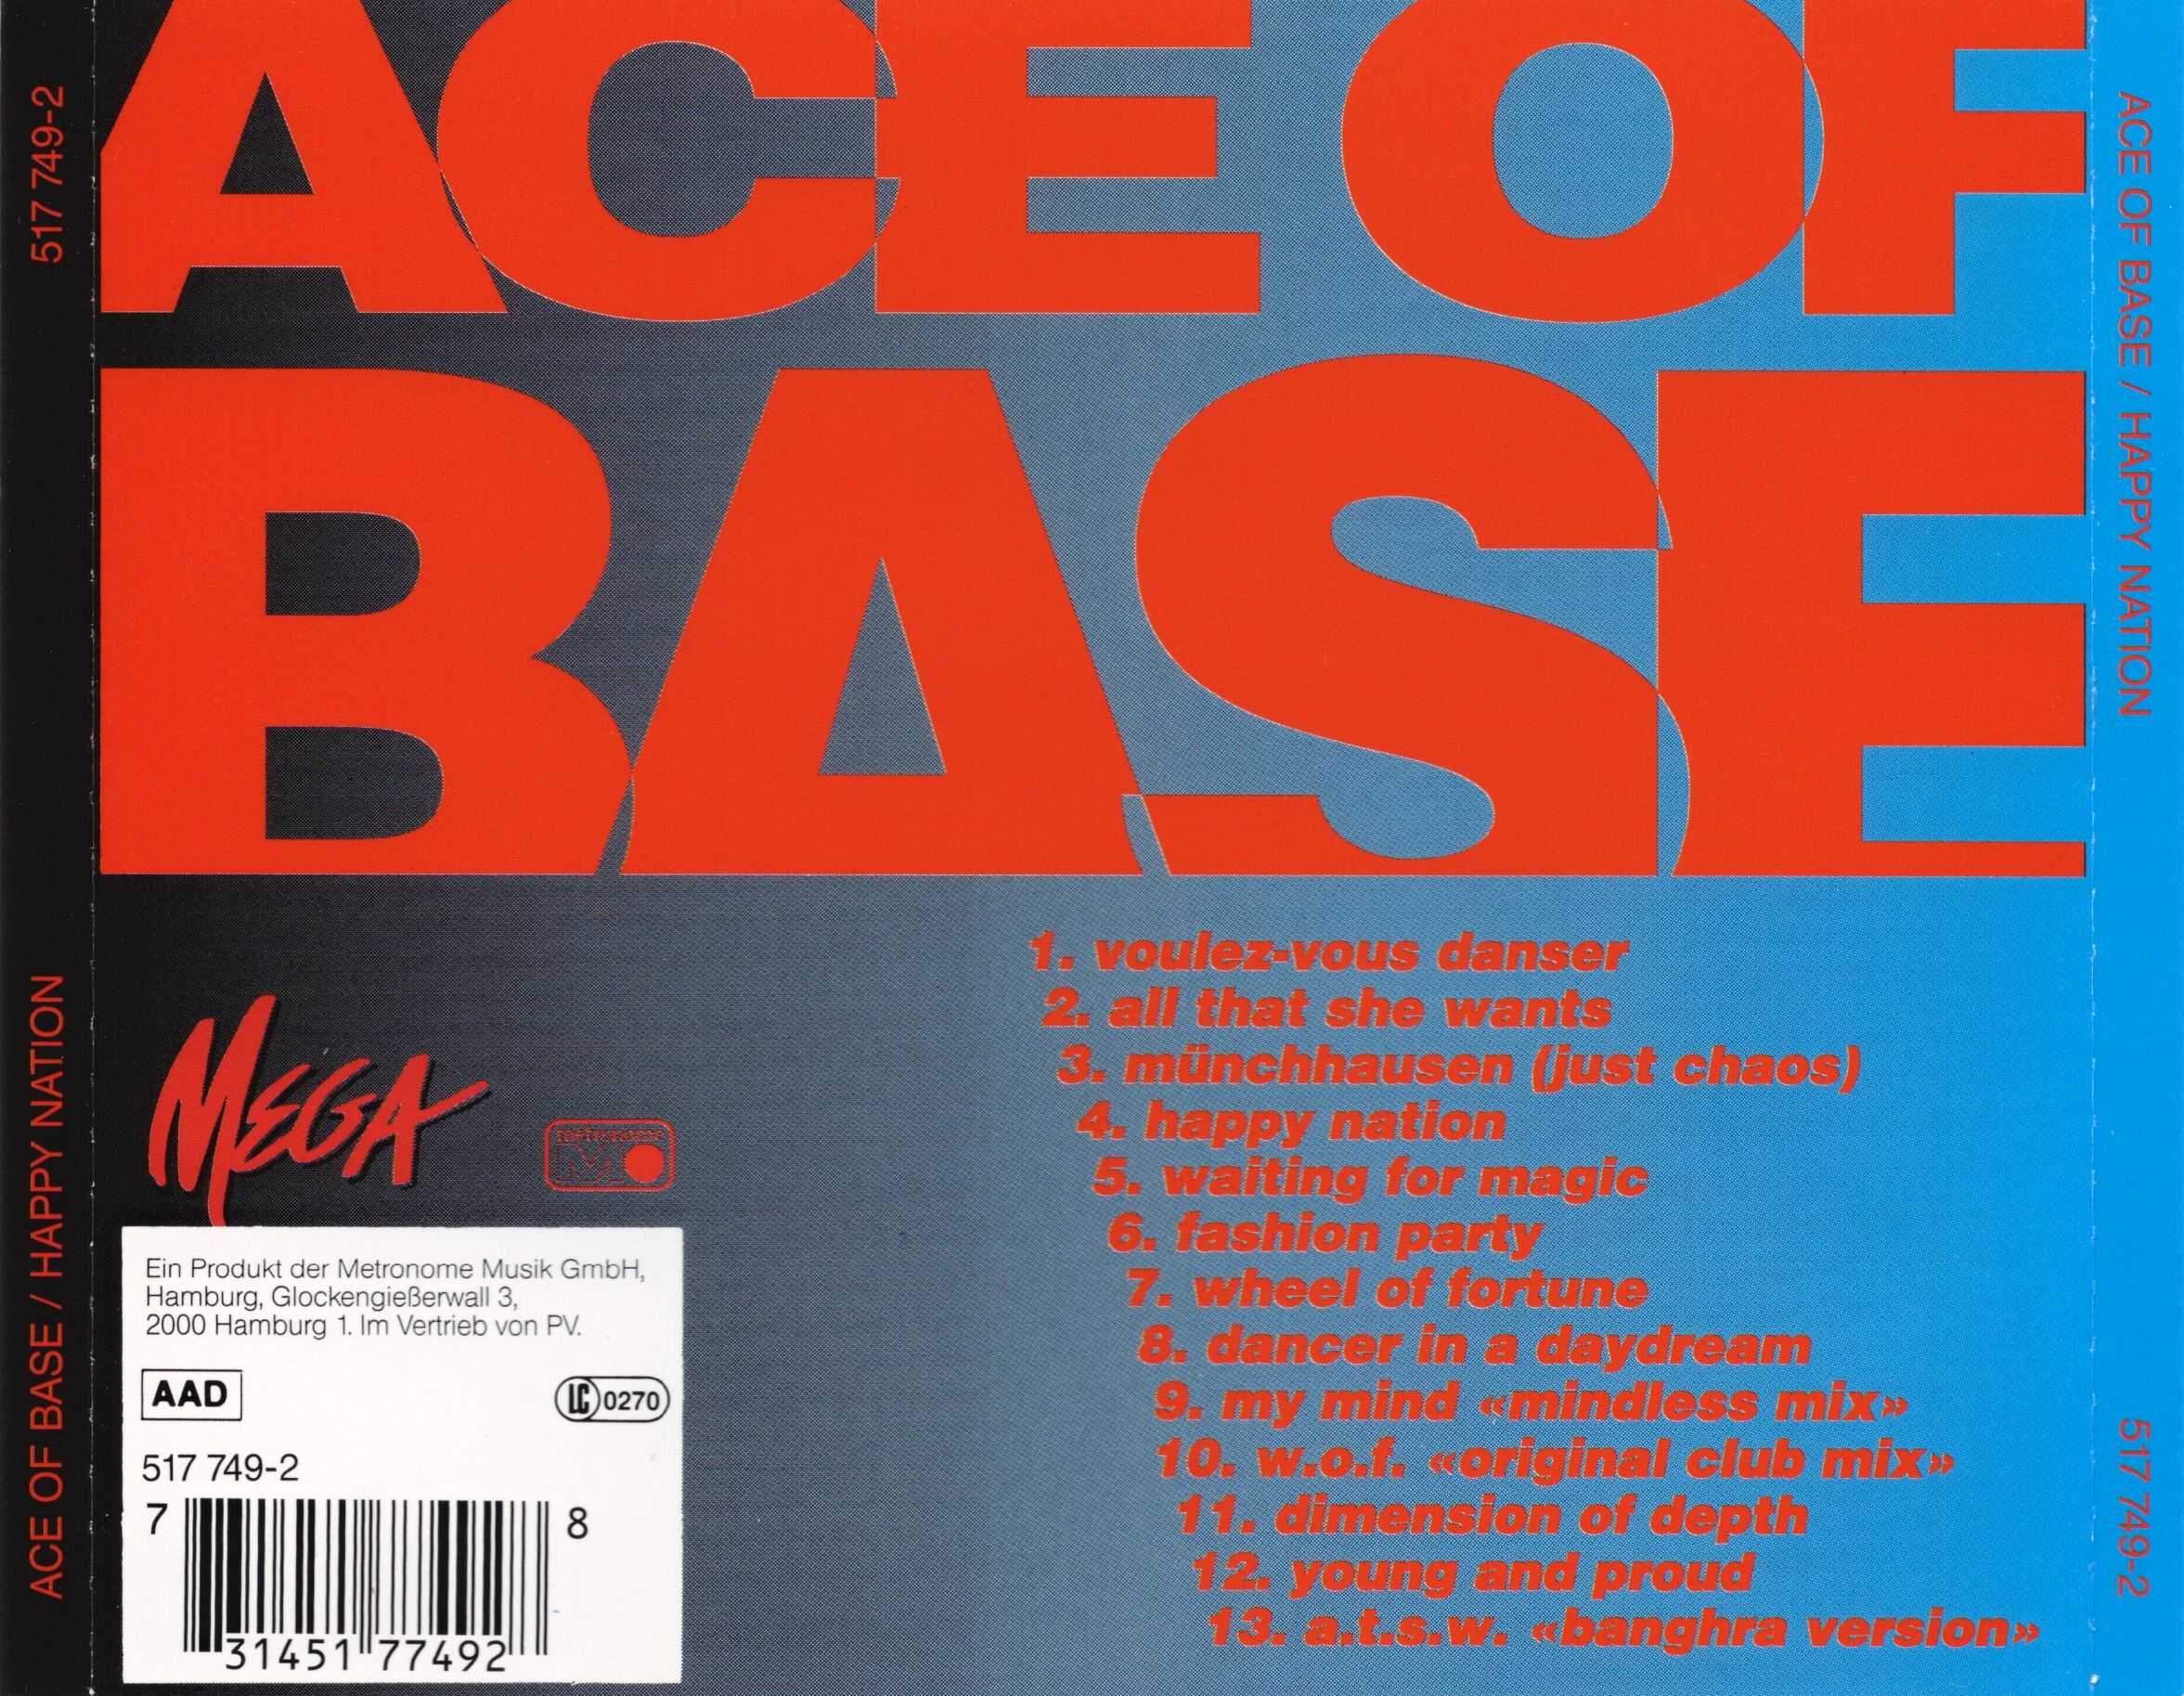 Happy nation fred. Ace of Base 1992. Ace of Base 1993 Happy Nation. Ace of Base Happy Nation обложка. Ace of Base Happy Nation u.s. Version.